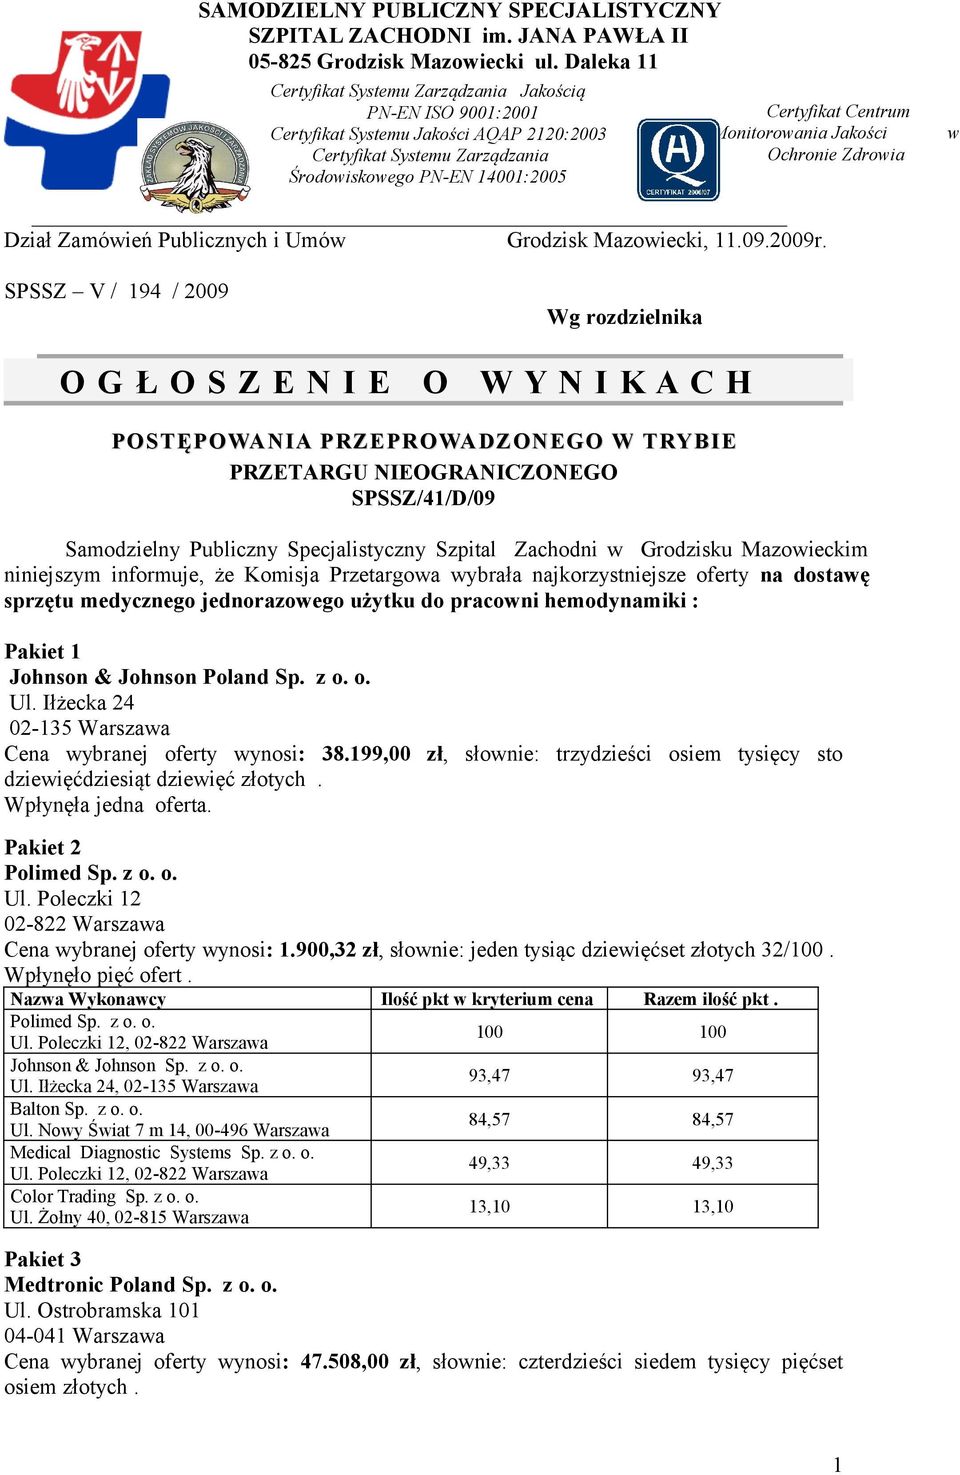 Monitorowania Jakości Ochronie Zdrowia Dział Zamówień Publicznych i Umów Grodzisk Mazowiecki, 11.09.2009r.